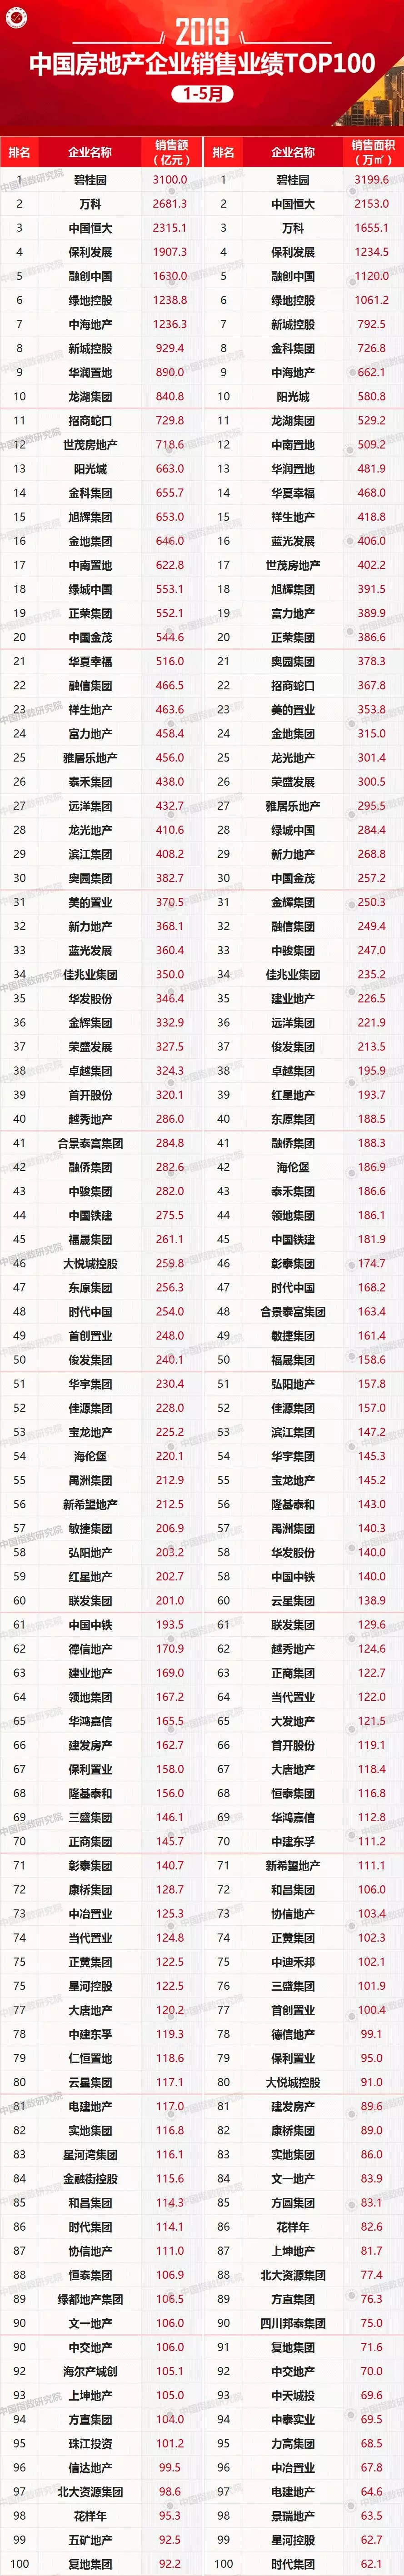 2019年1-5月中国房地产企业销售业绩100